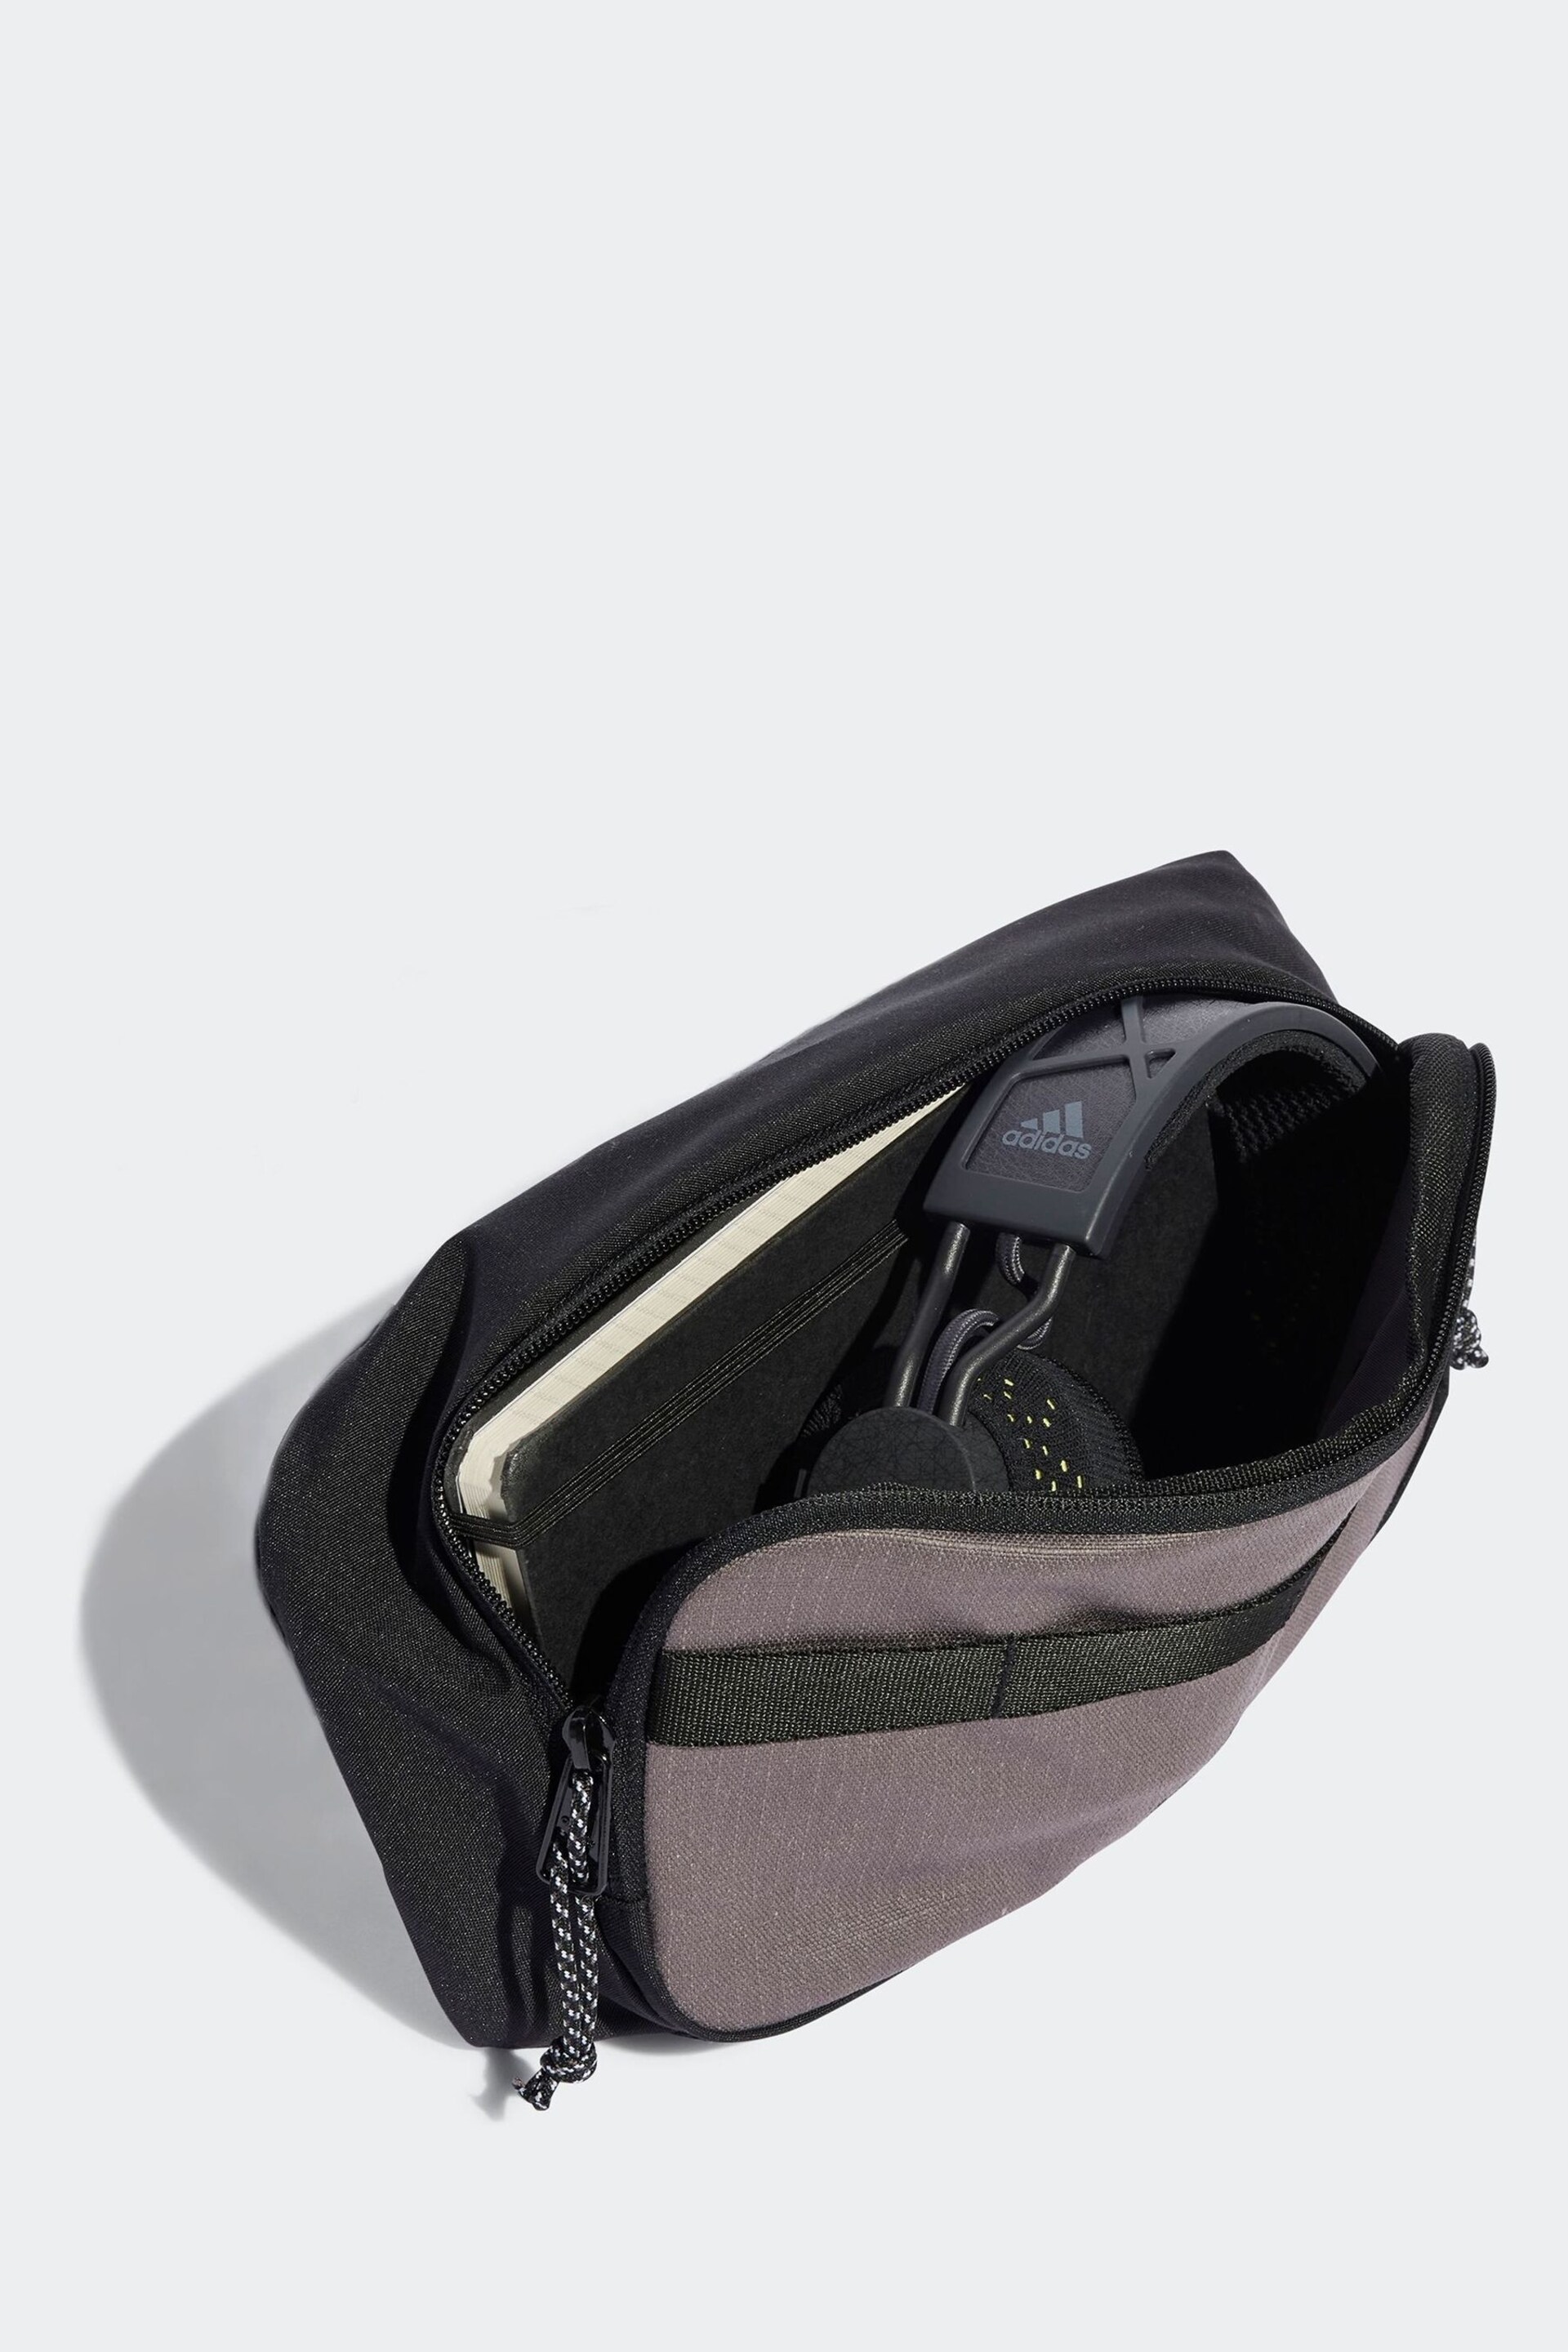 adidas Brown Light Xplorer Small Bag - Image 4 of 6